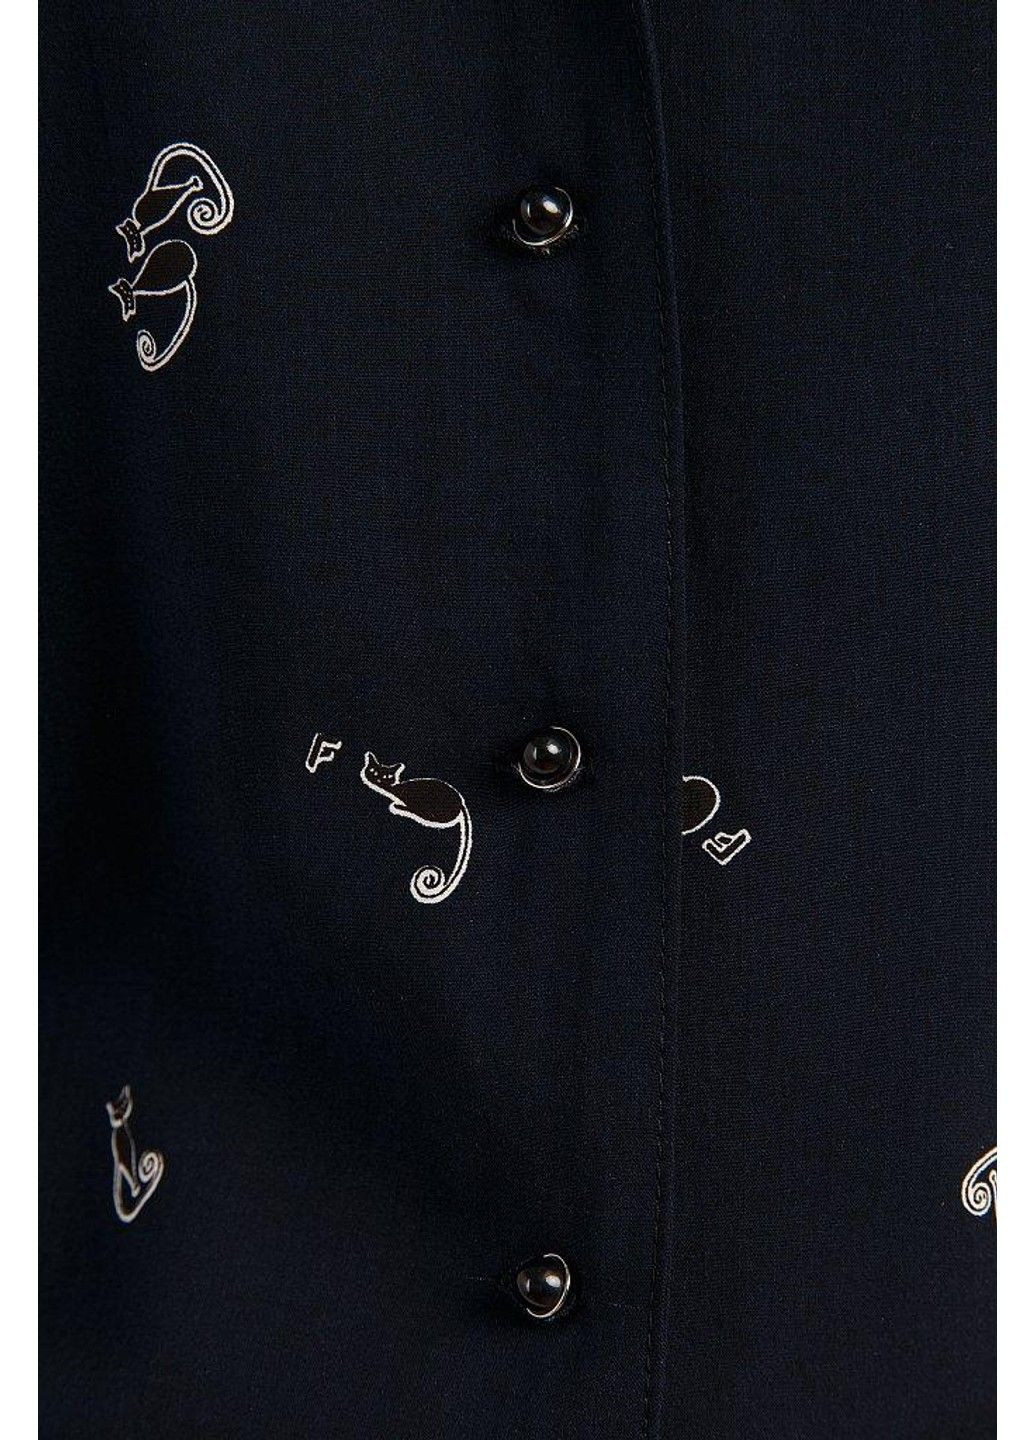 Комбинезон-шорты S19-32092-101 Finn Flare комбинезон-шорты рисунок тёмно-синий повседневный